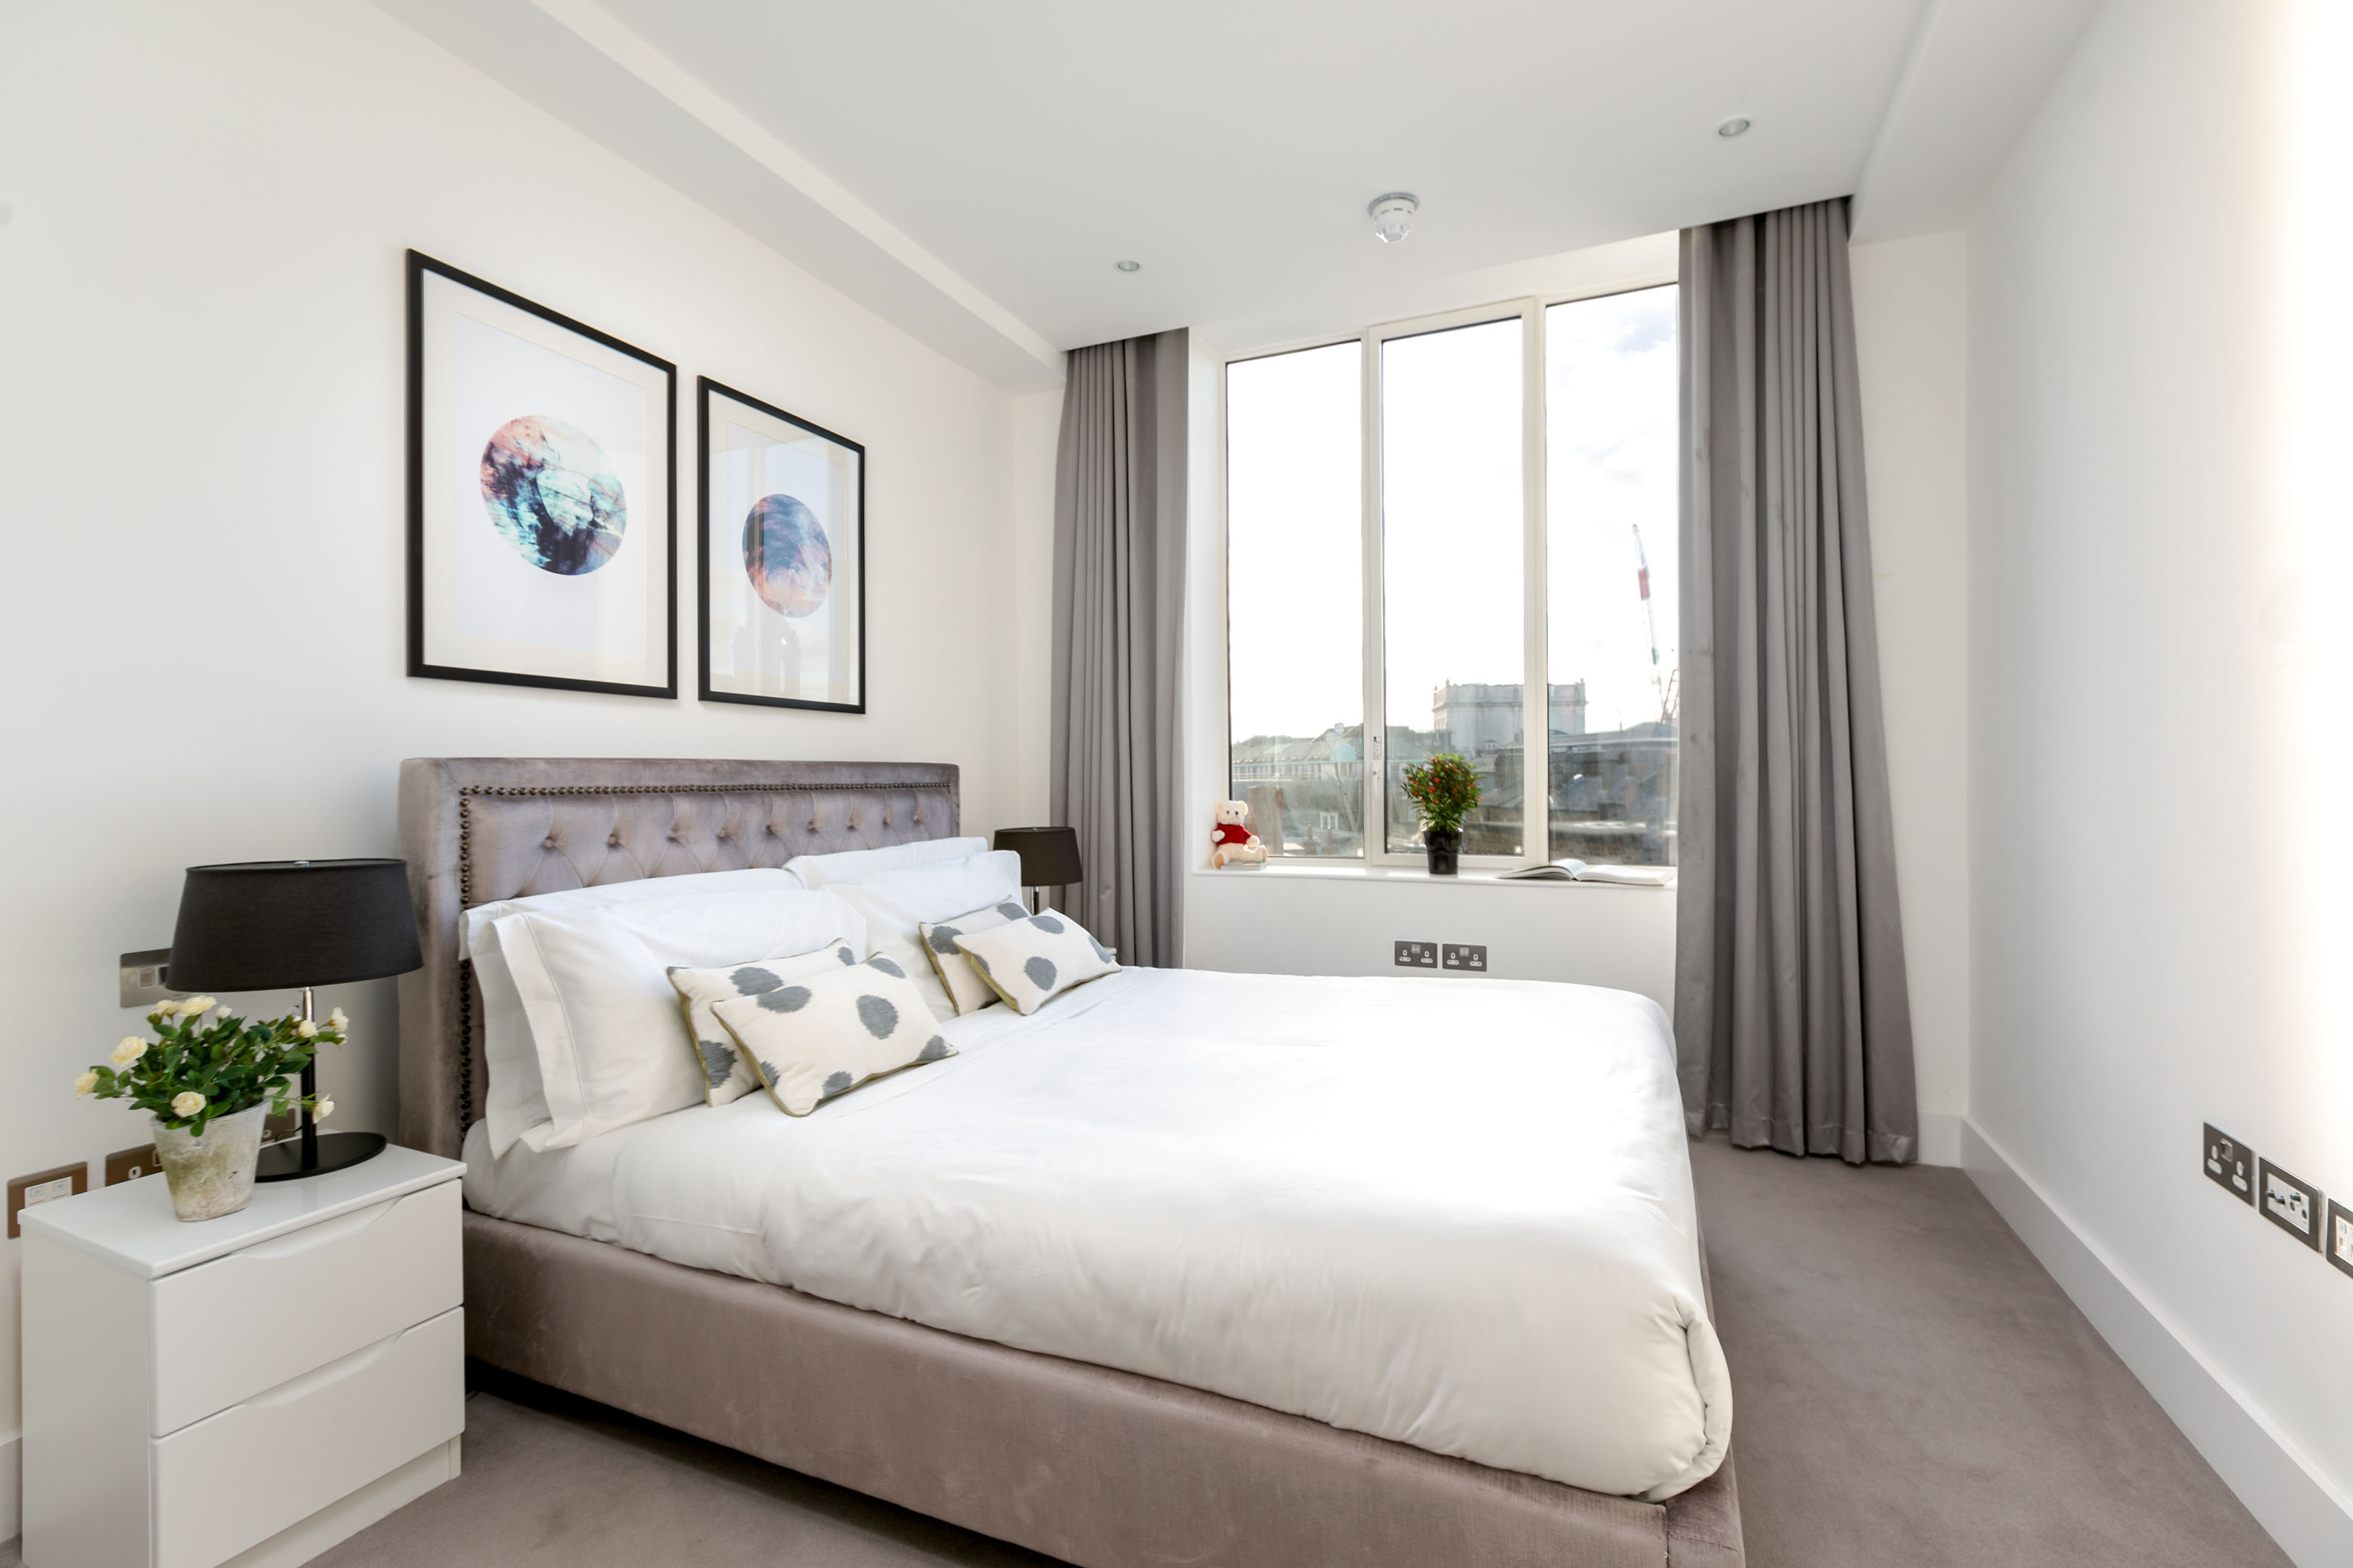 Lovelydays luxury service apartment rental - London - Covent Garden - Prince's House 605 - Lovelysuite - 2 bedrooms - 2 bathrooms - King bed - 6218d4979fac - Lovelydays